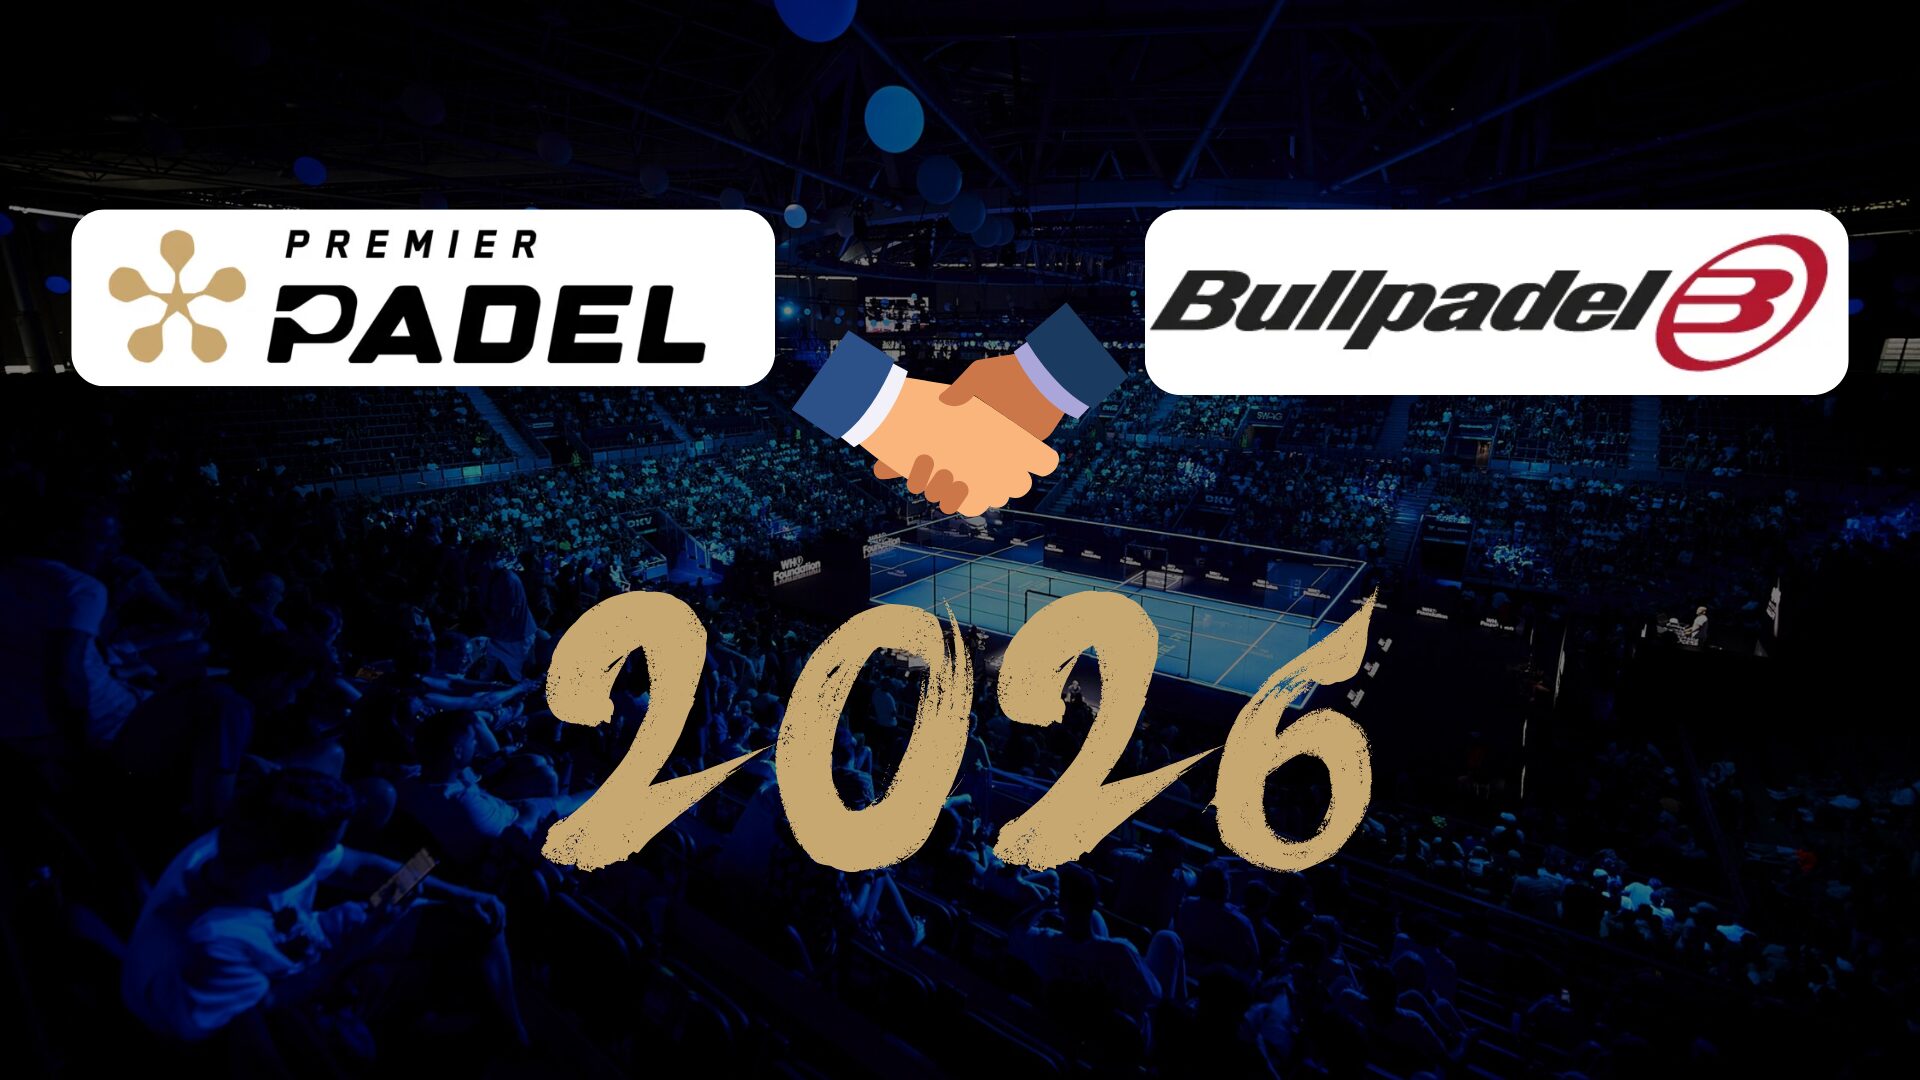 Bullpadel zorgt voor de officiële rackets van Premier Padel tot 2026!